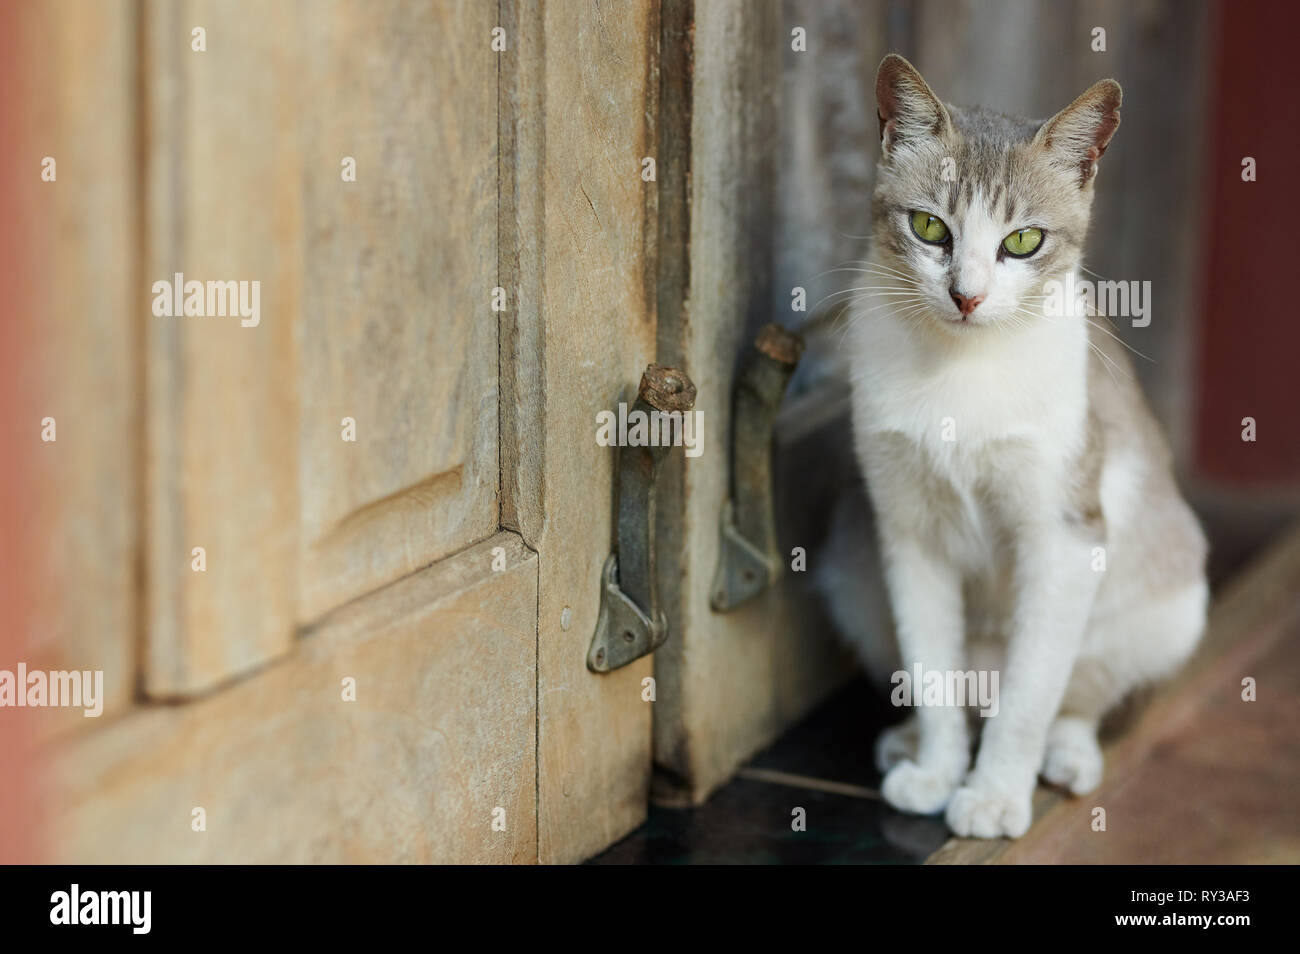 Katze mit grünen Augen sitzen neben Tür Nähe zu sehen. Stockfoto